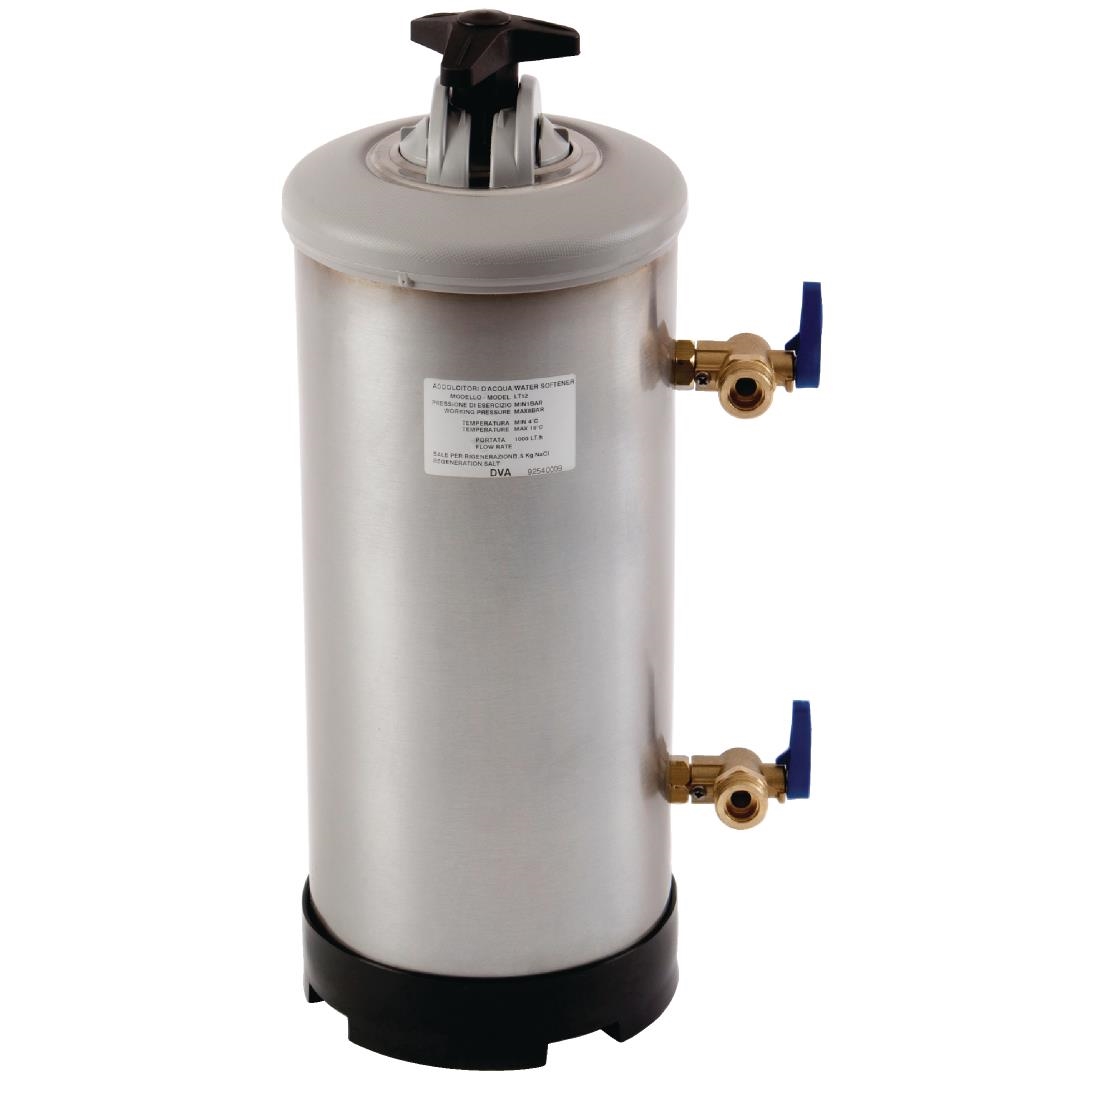 Manual Water Softener WS12-K